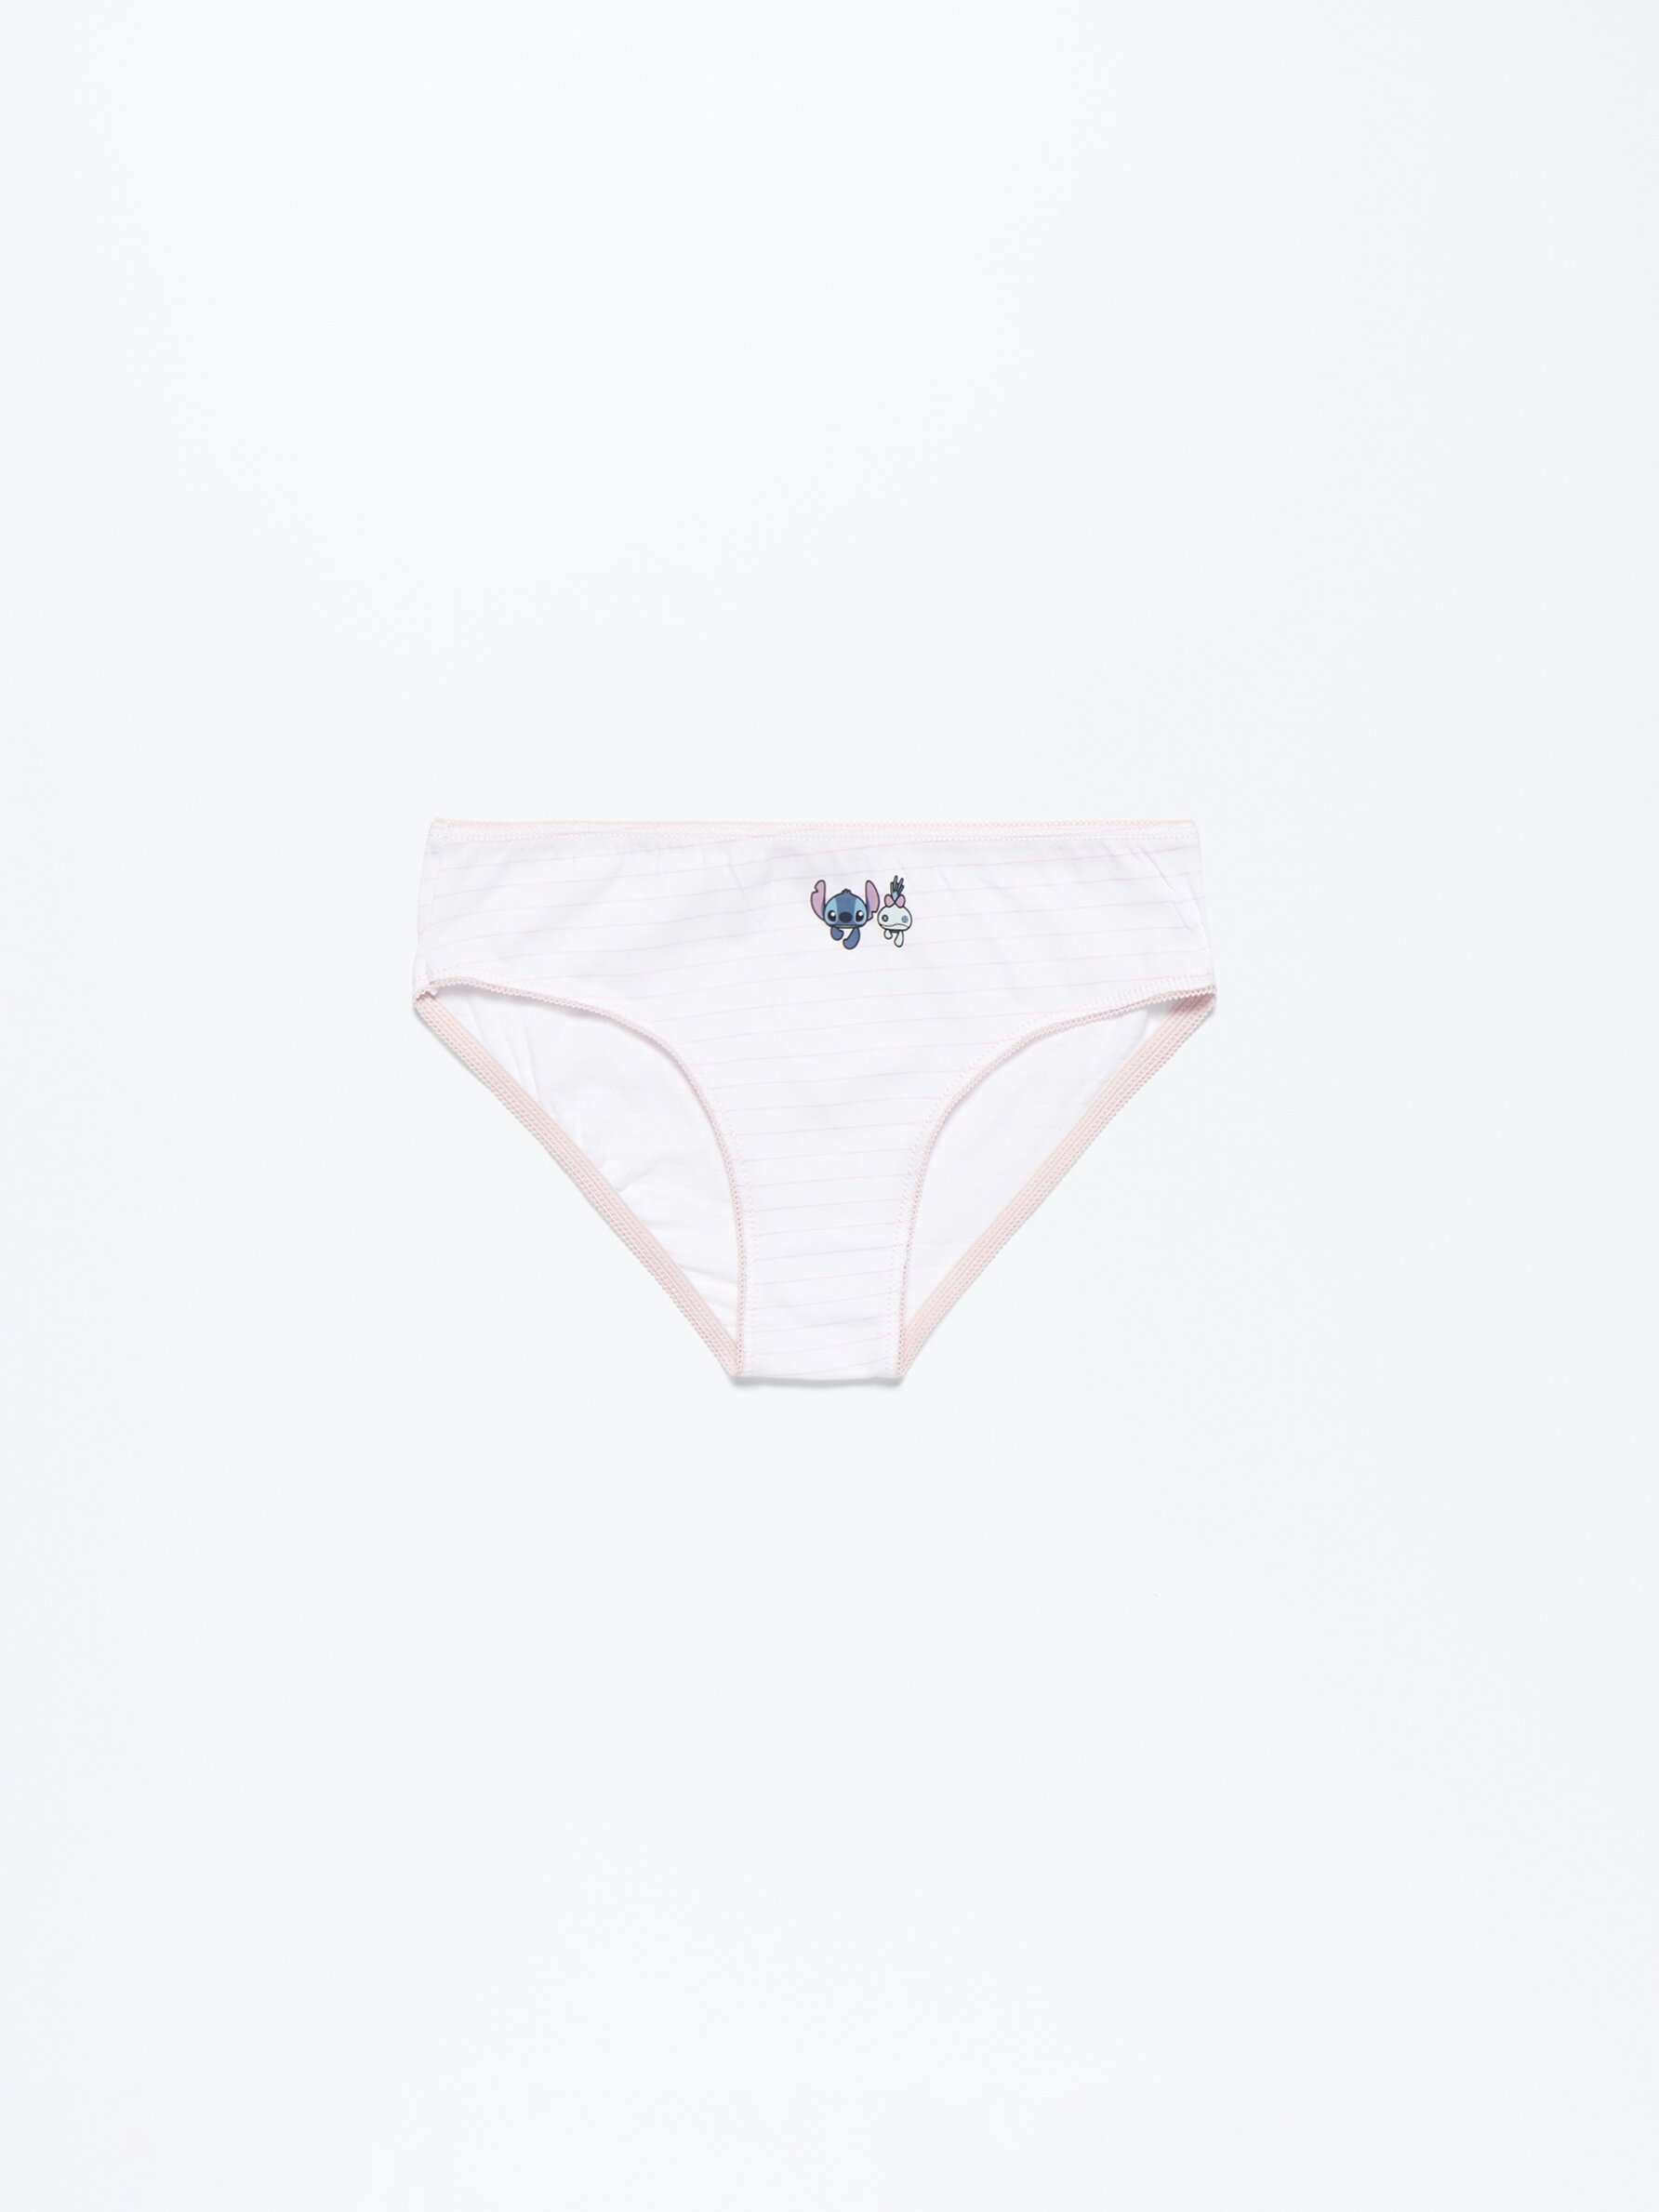 14 Pack Assorted Disney Briefs underwear Girls Cotton Size 6